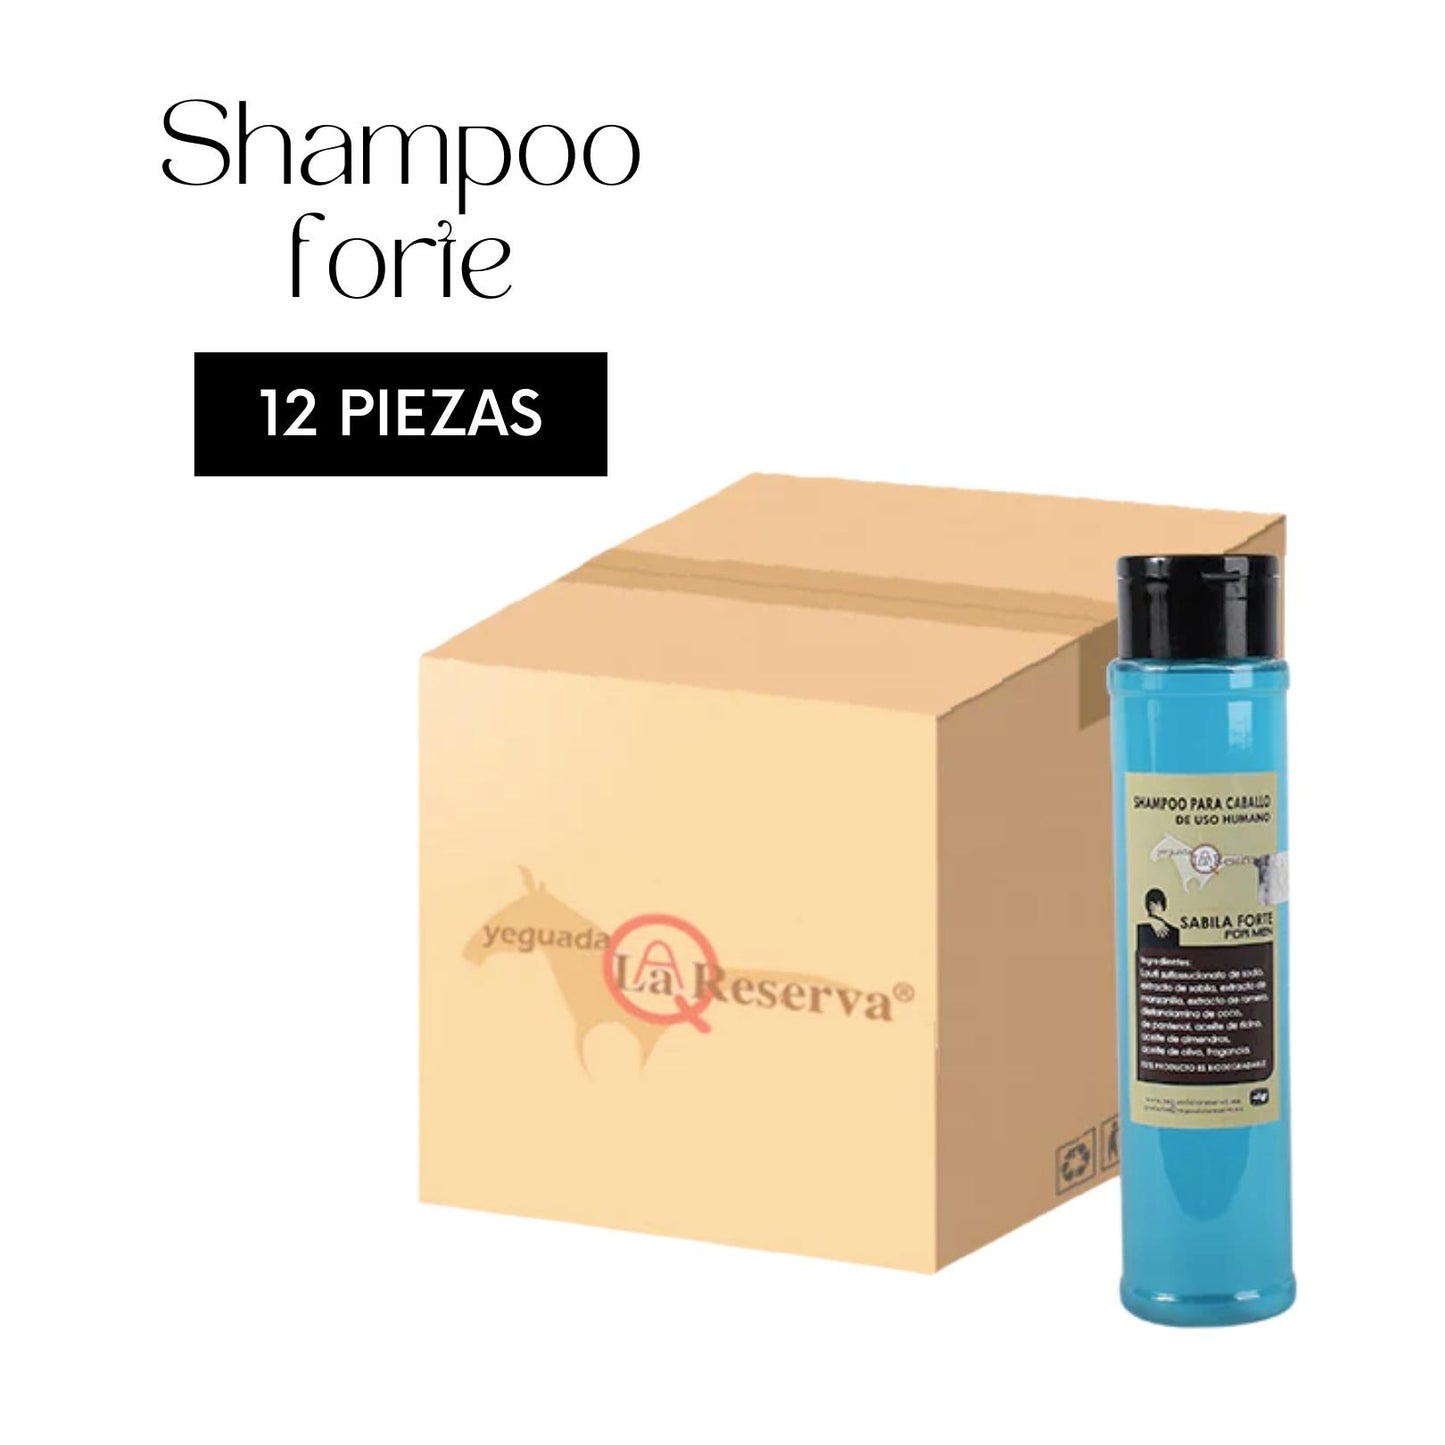 12 pc Shampoo Aloe Vera Forte For Men